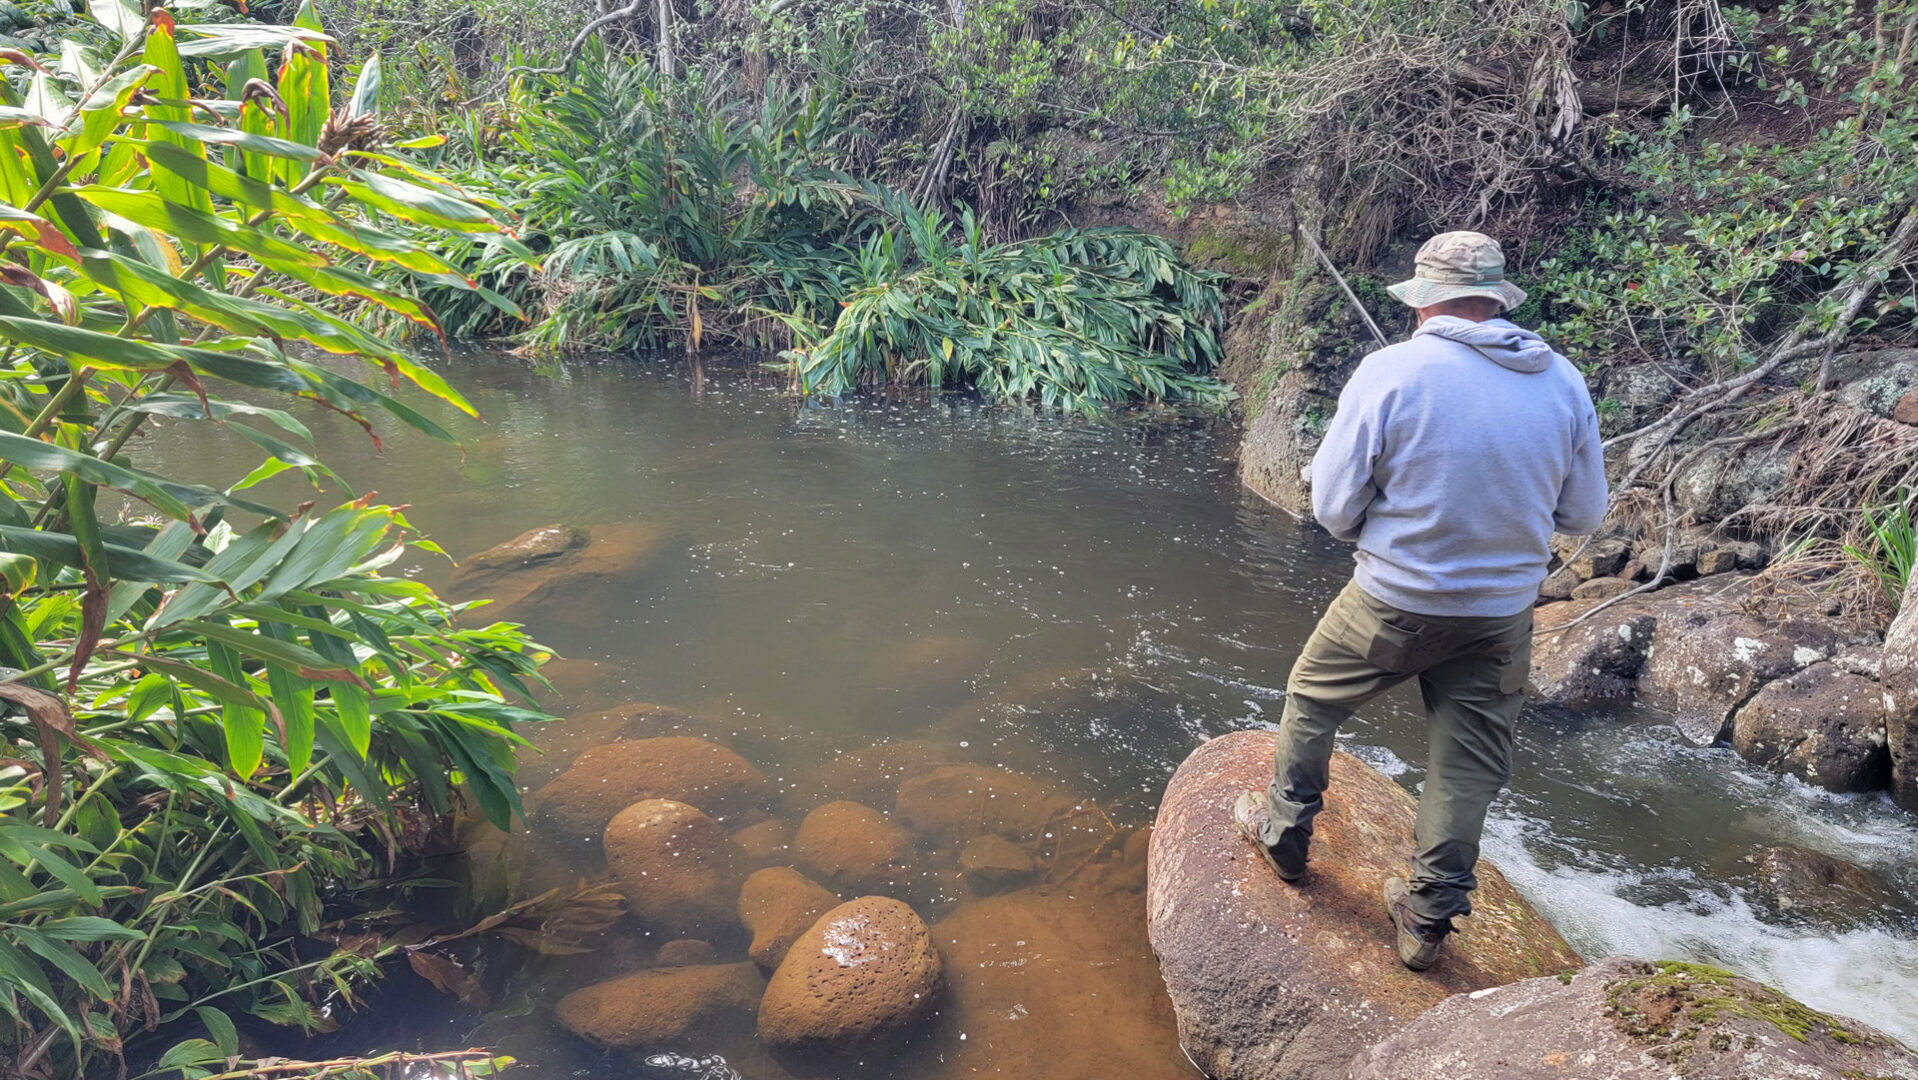 Dave fishing Kauaikinana stream